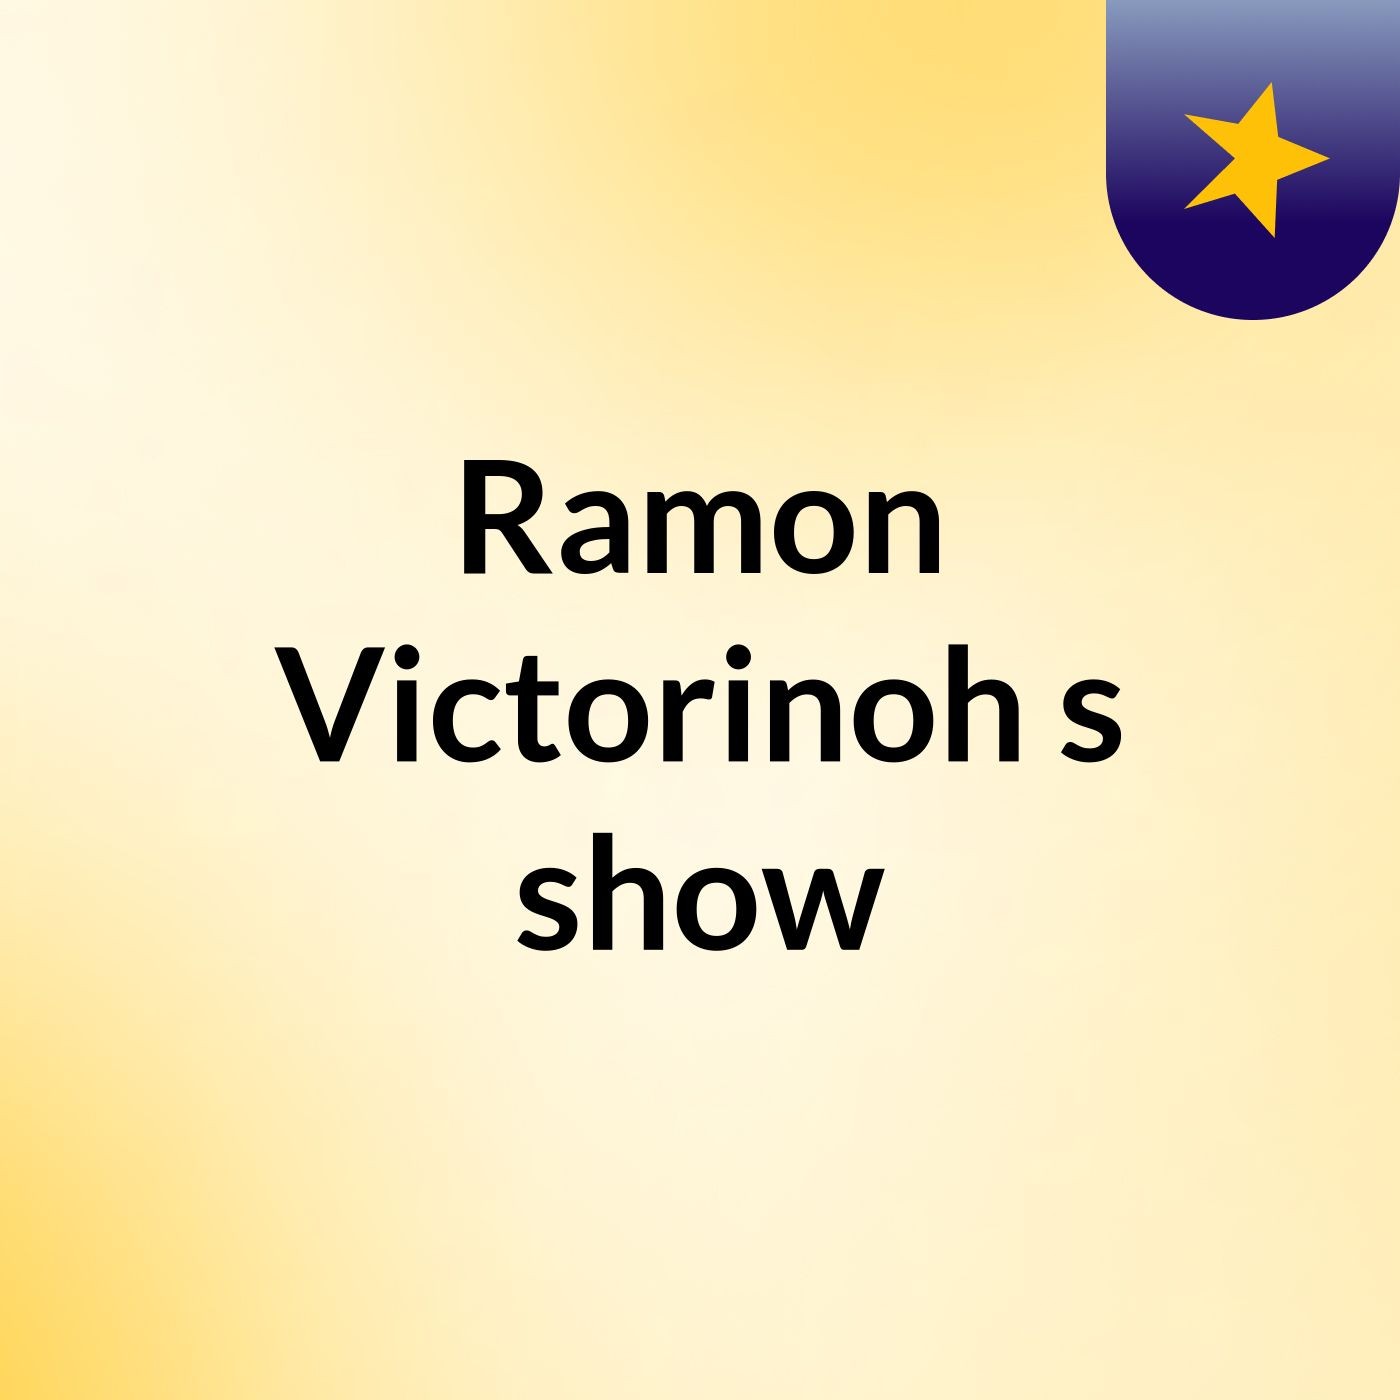 Ramon Victorinoh's show